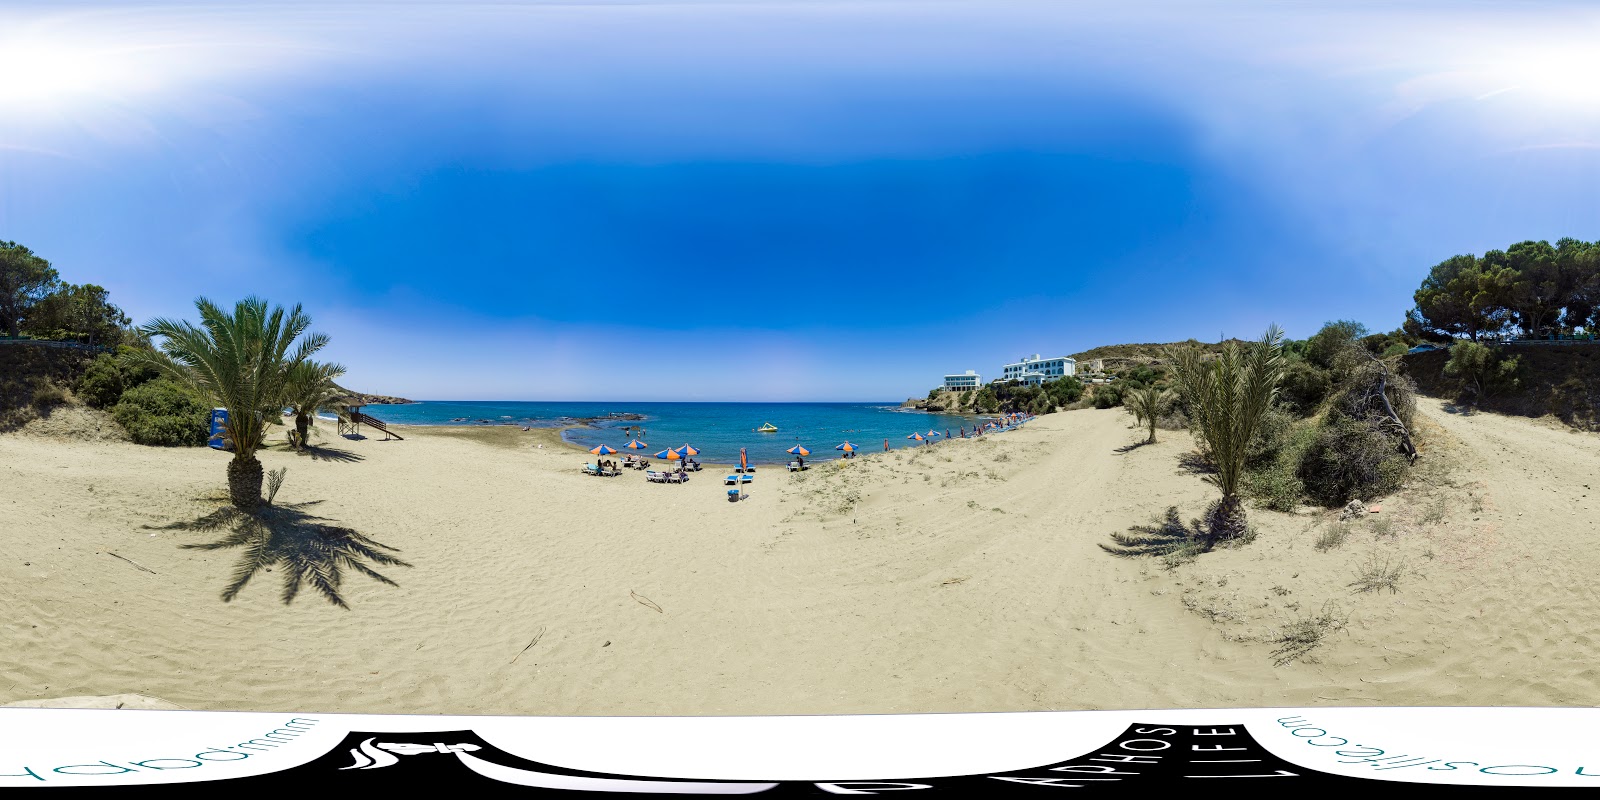 Zdjęcie Omega beach z powierzchnią turkusowa czysta woda